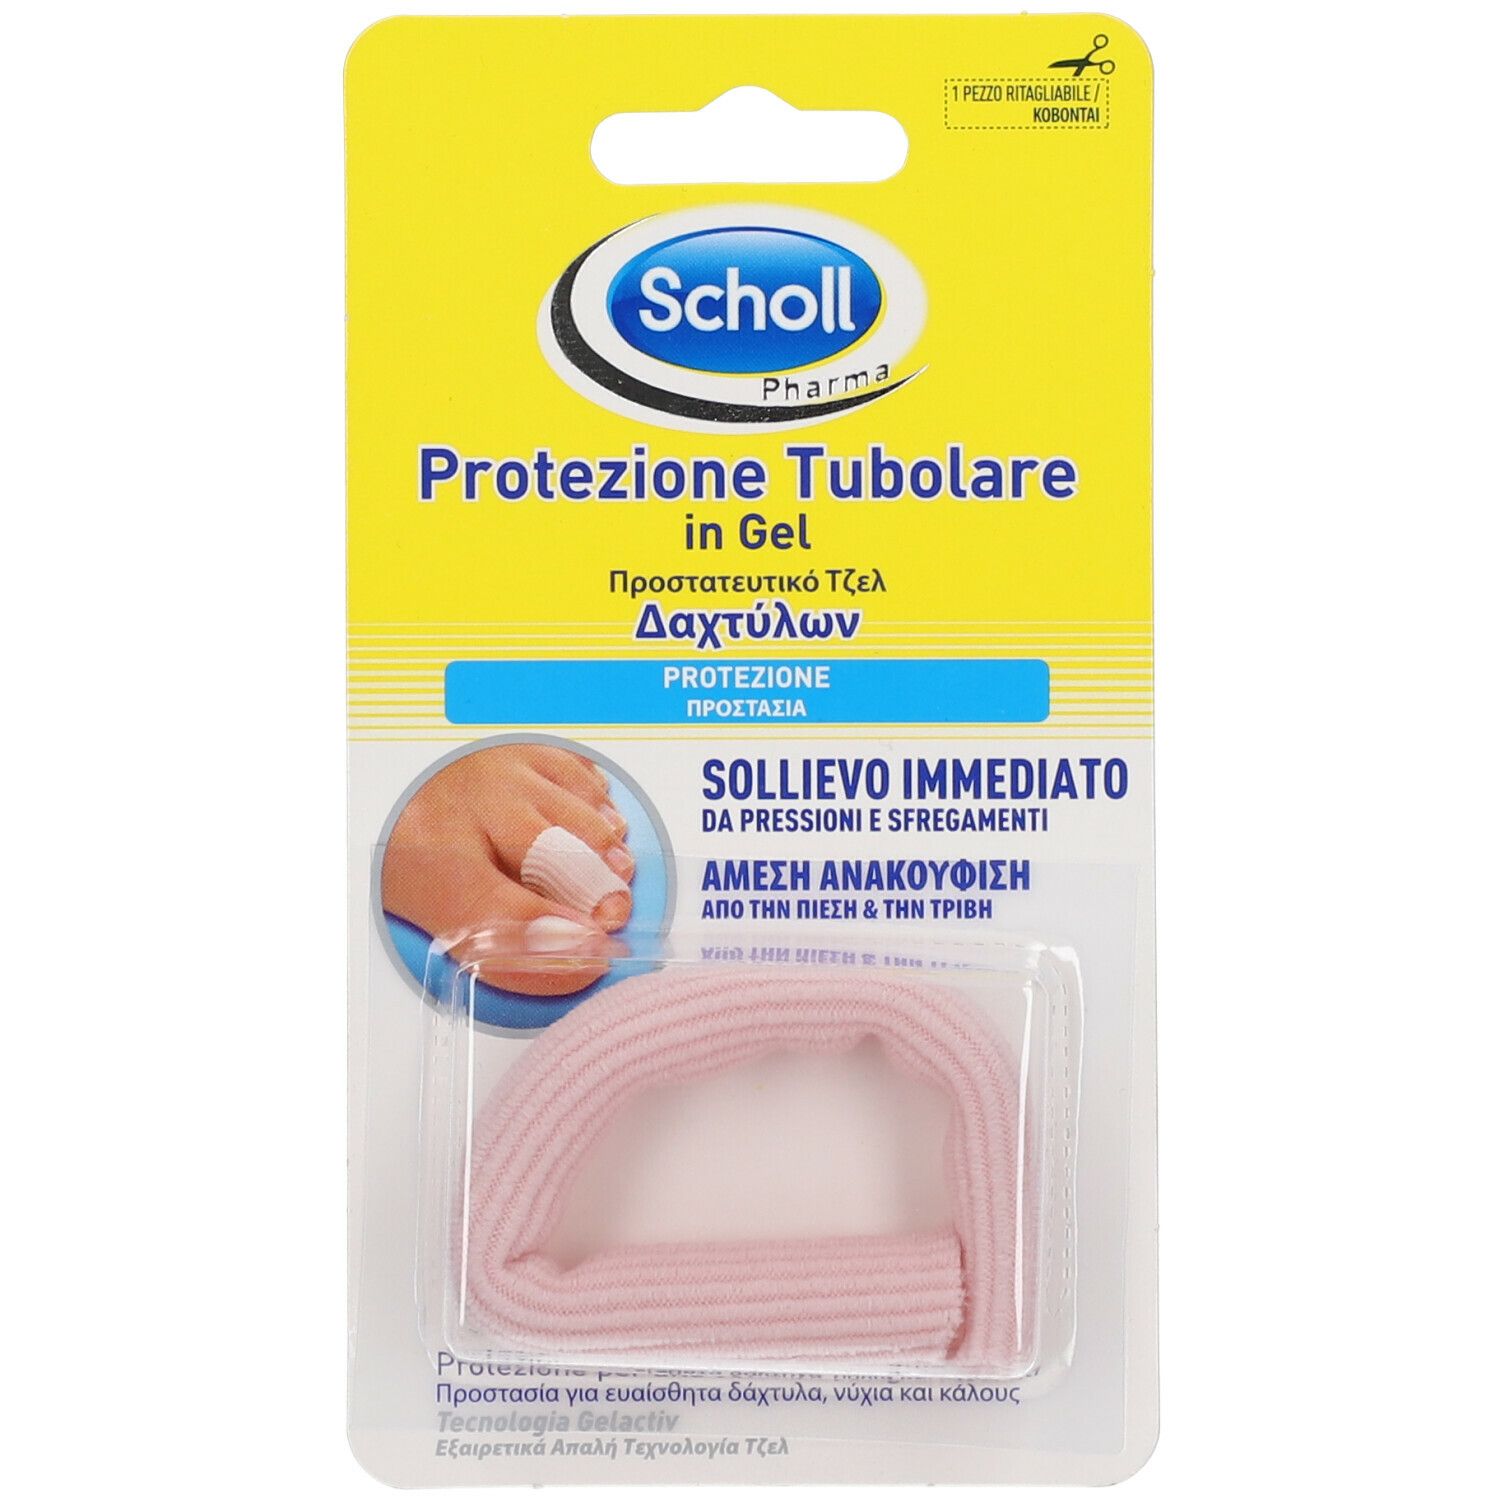 Scholl® Protezione Tubolare in Gel